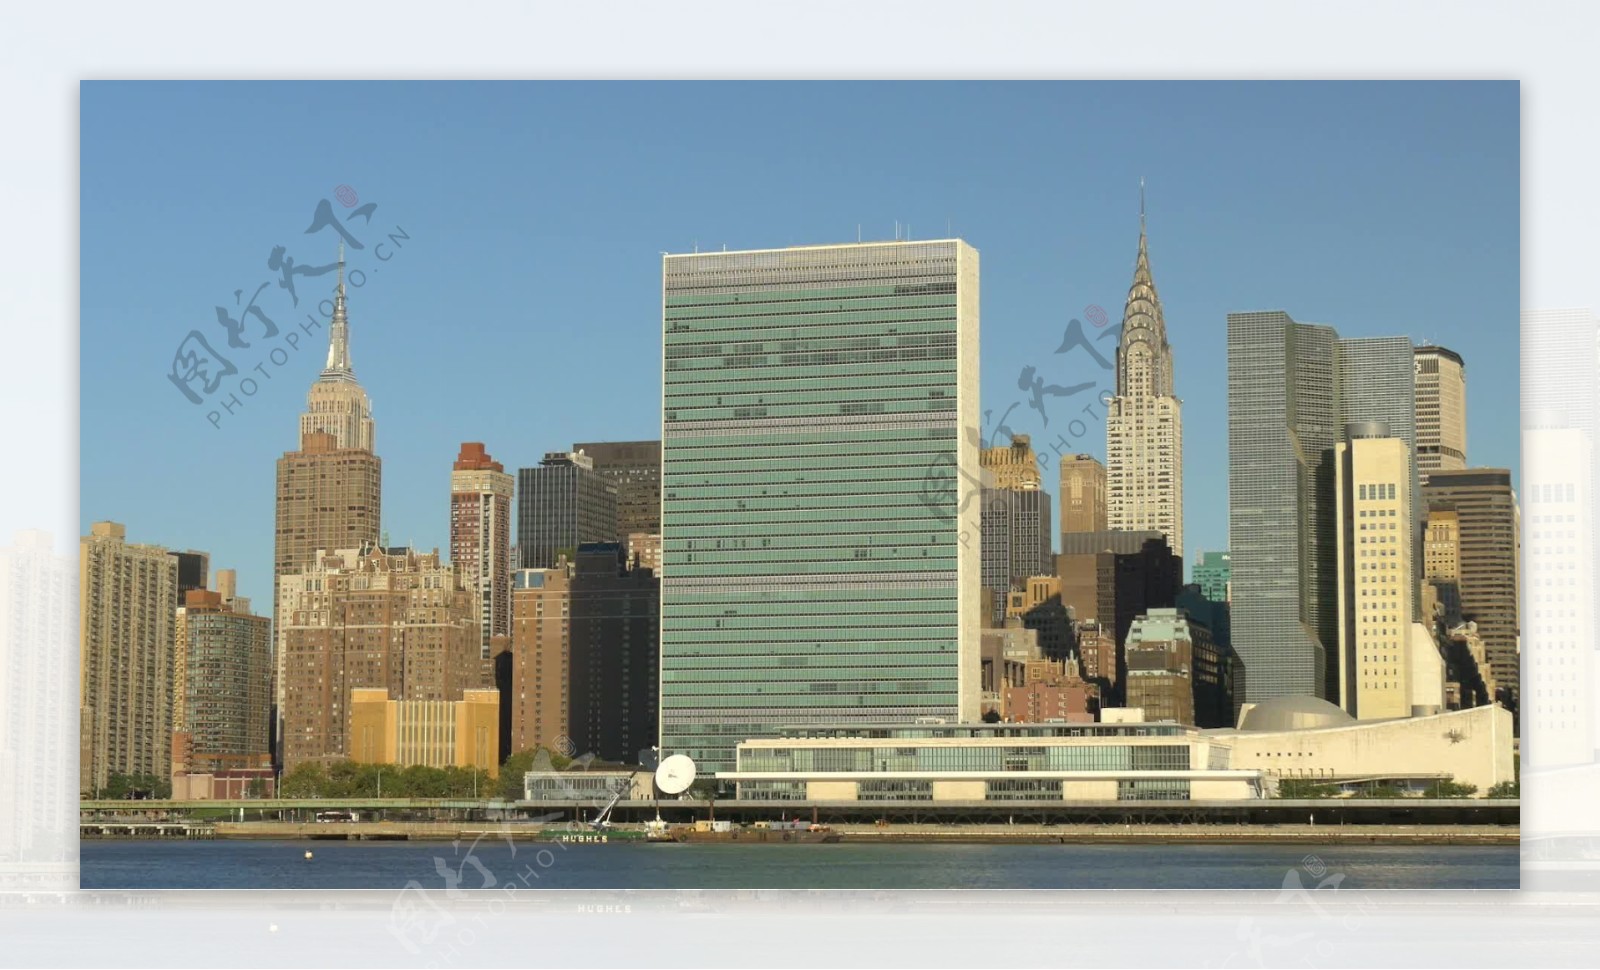 曼哈顿岛纽约联合国总部